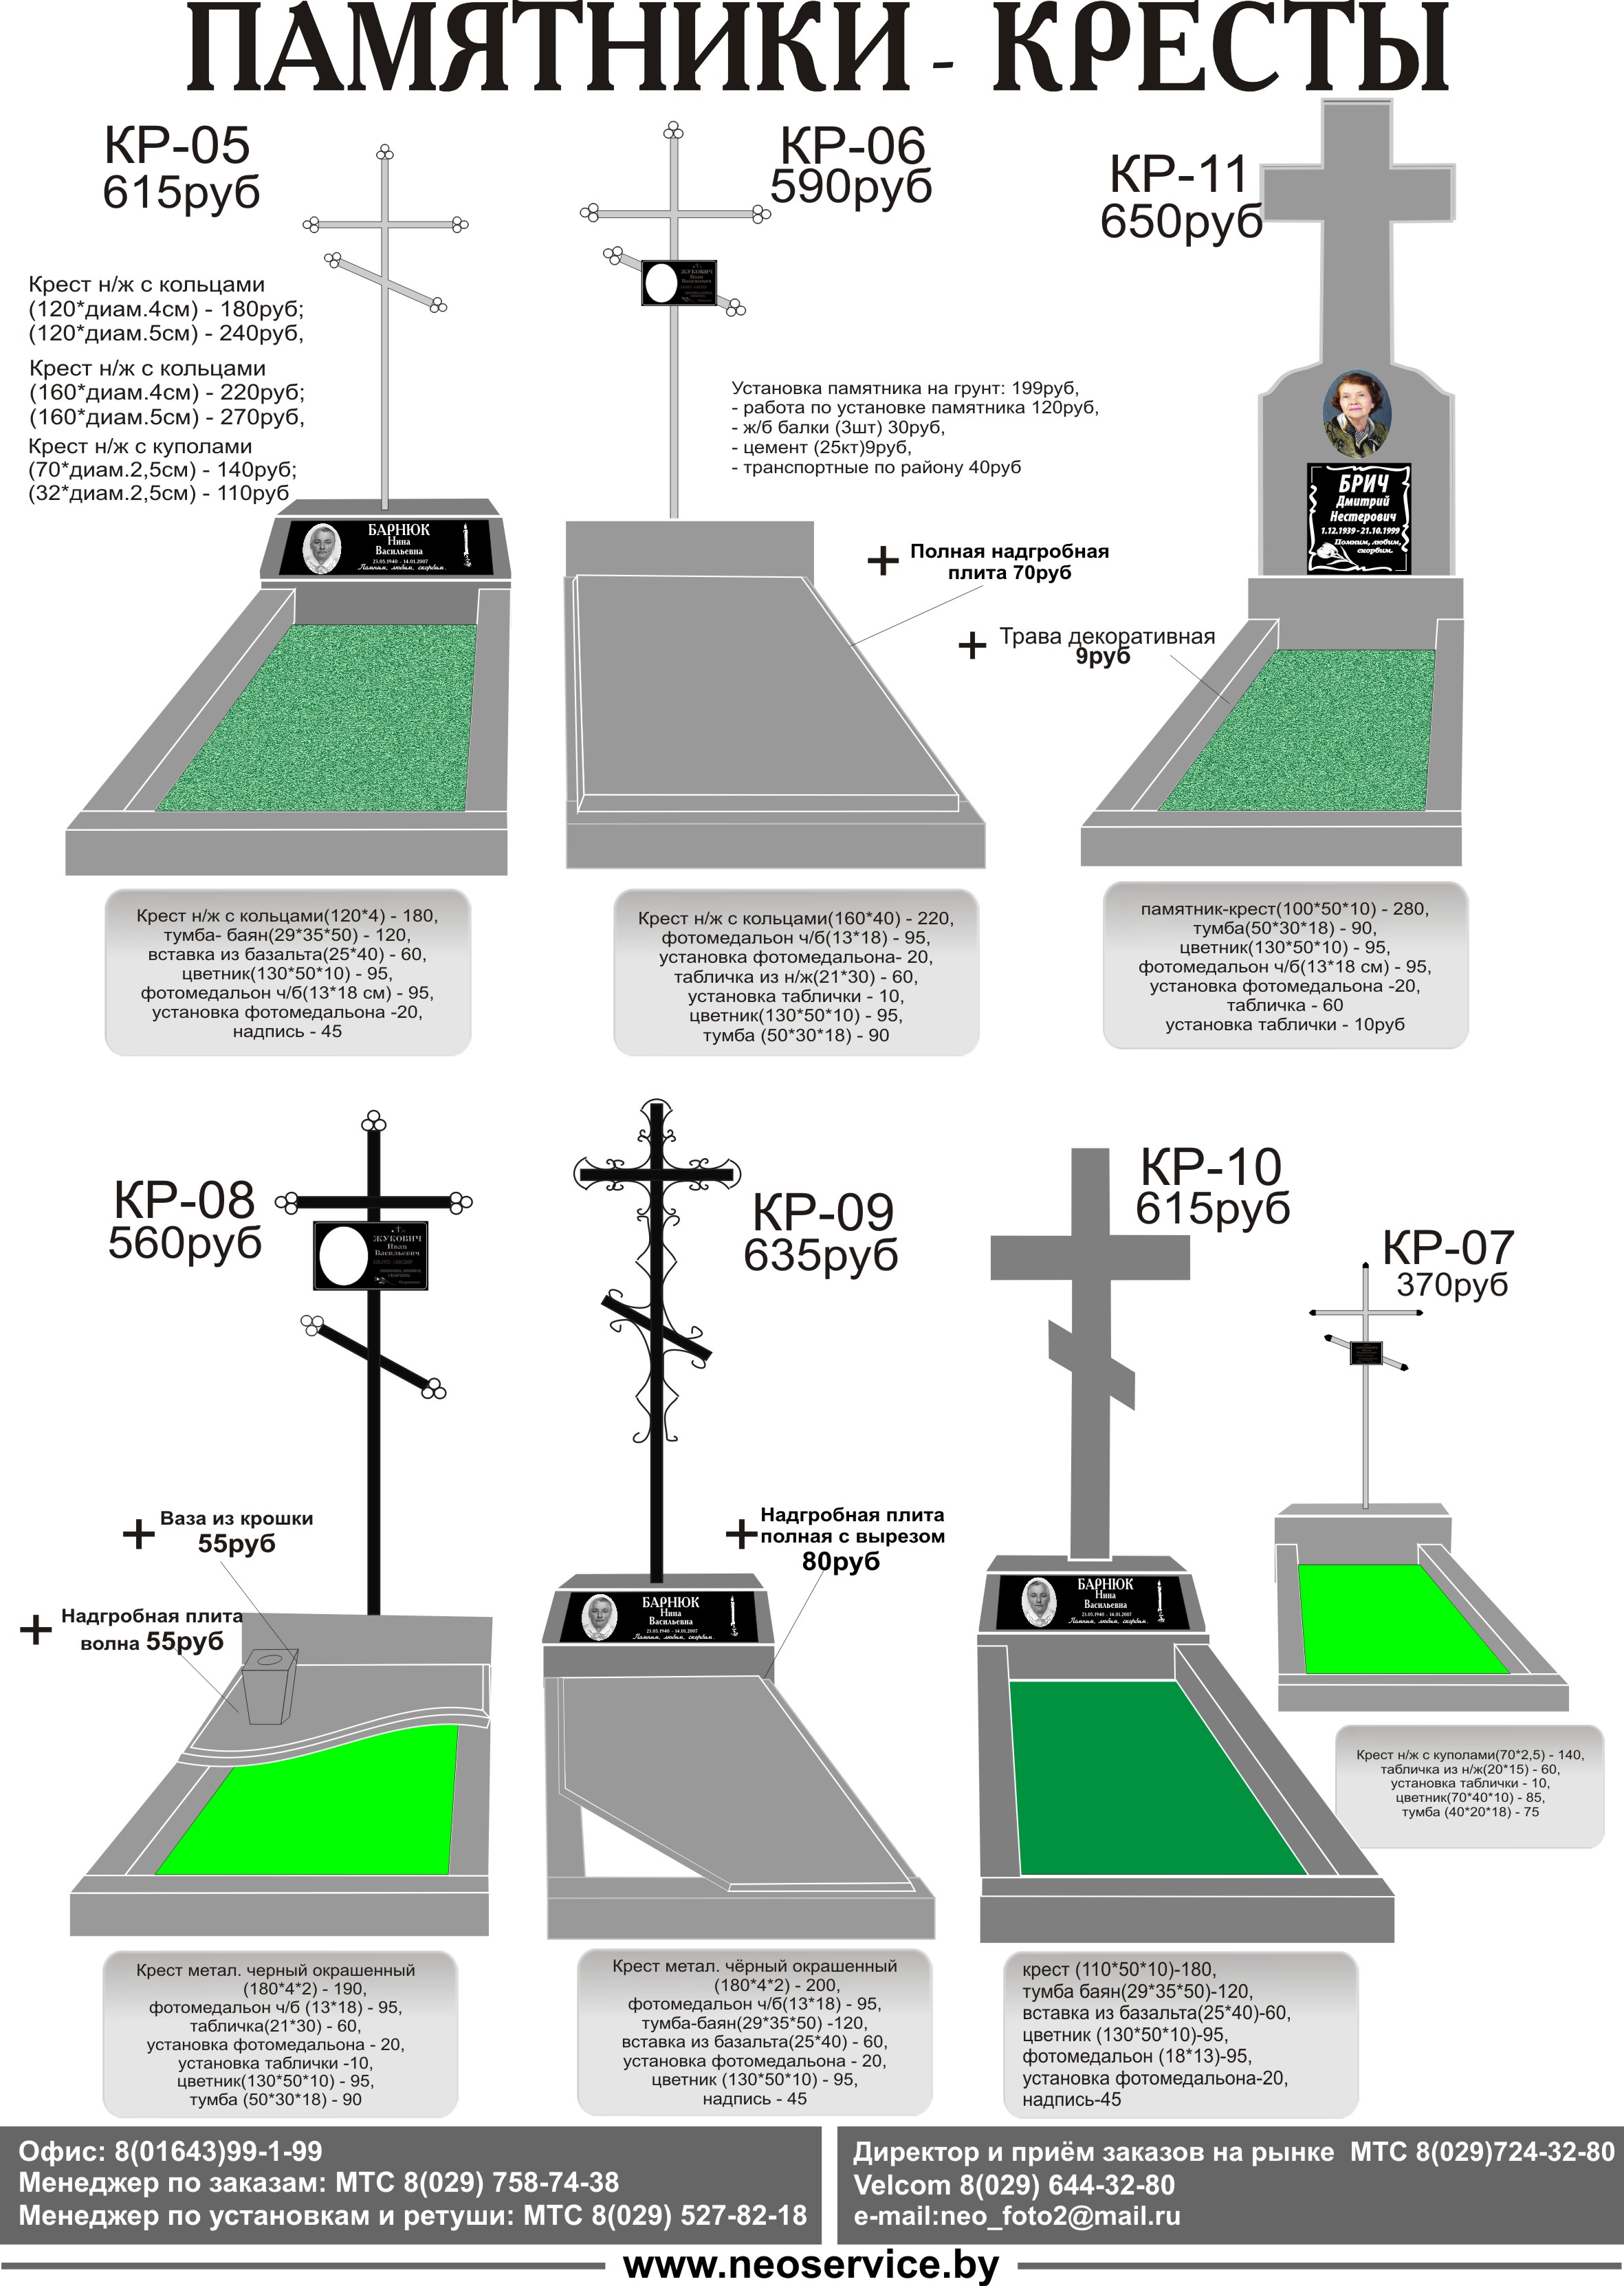 Как сделать крест на могилу - Simon Einstein